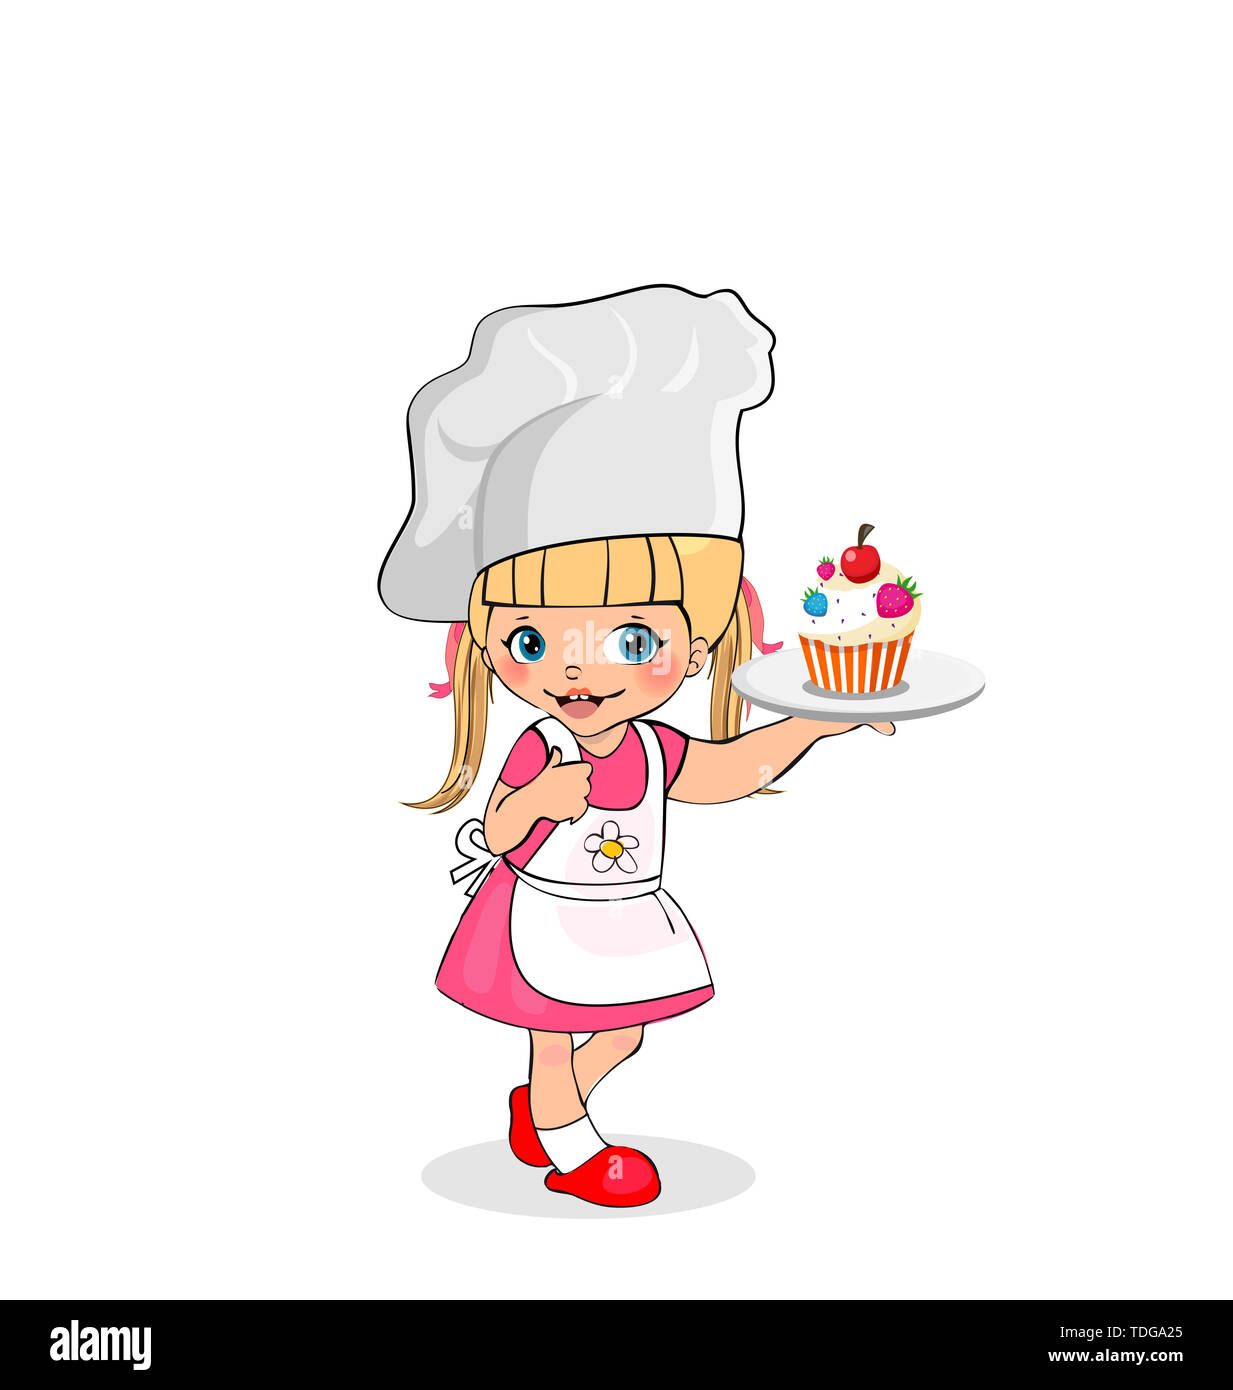 Kleines Mädchen Chef mit Kuchen auf Platte, Zicklein in weißer Schürze und Mütze mit Kuchen auf Fach, Baby Menü Charakter, Kocher, Kochen Kind isoliert auf weißem Backgr Stockfoto